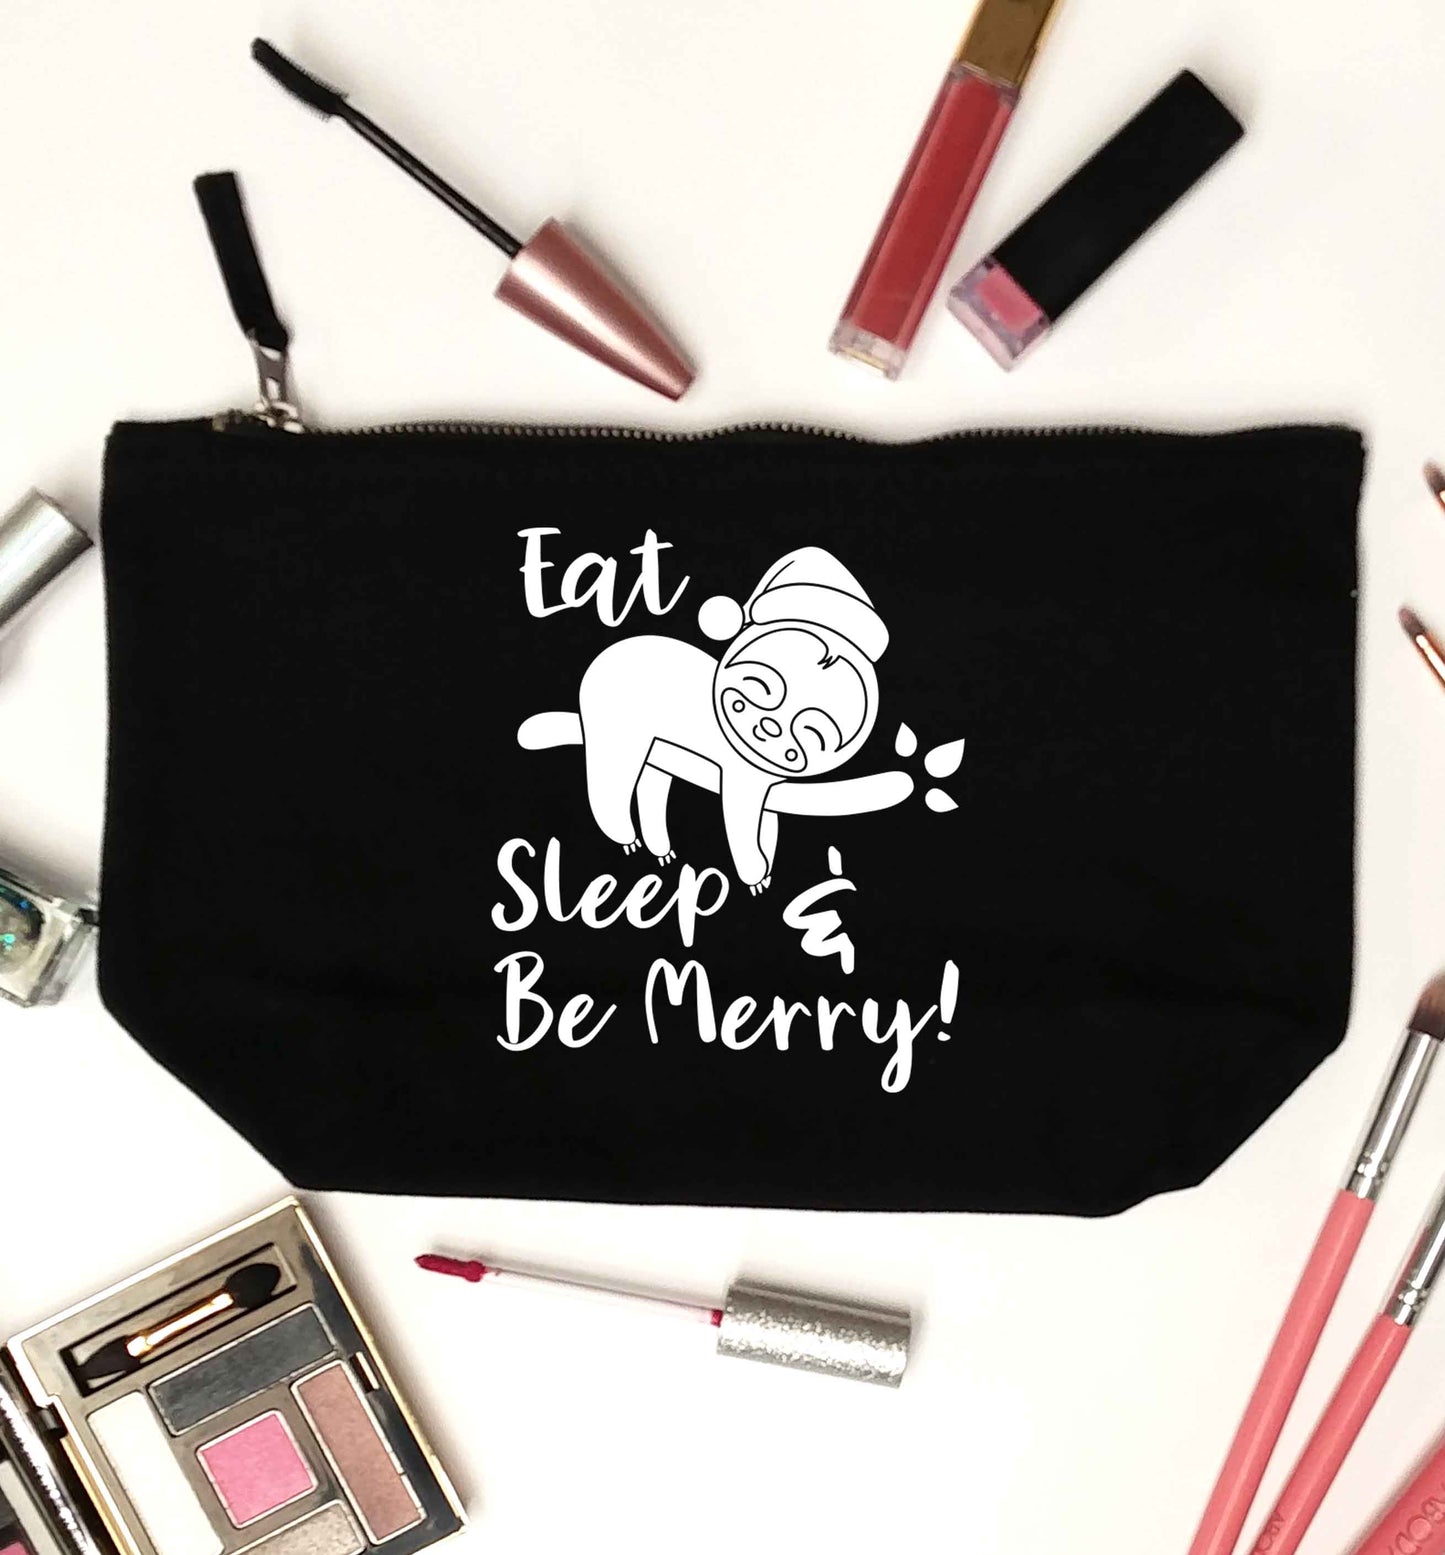 Merry Slothmas black makeup bag